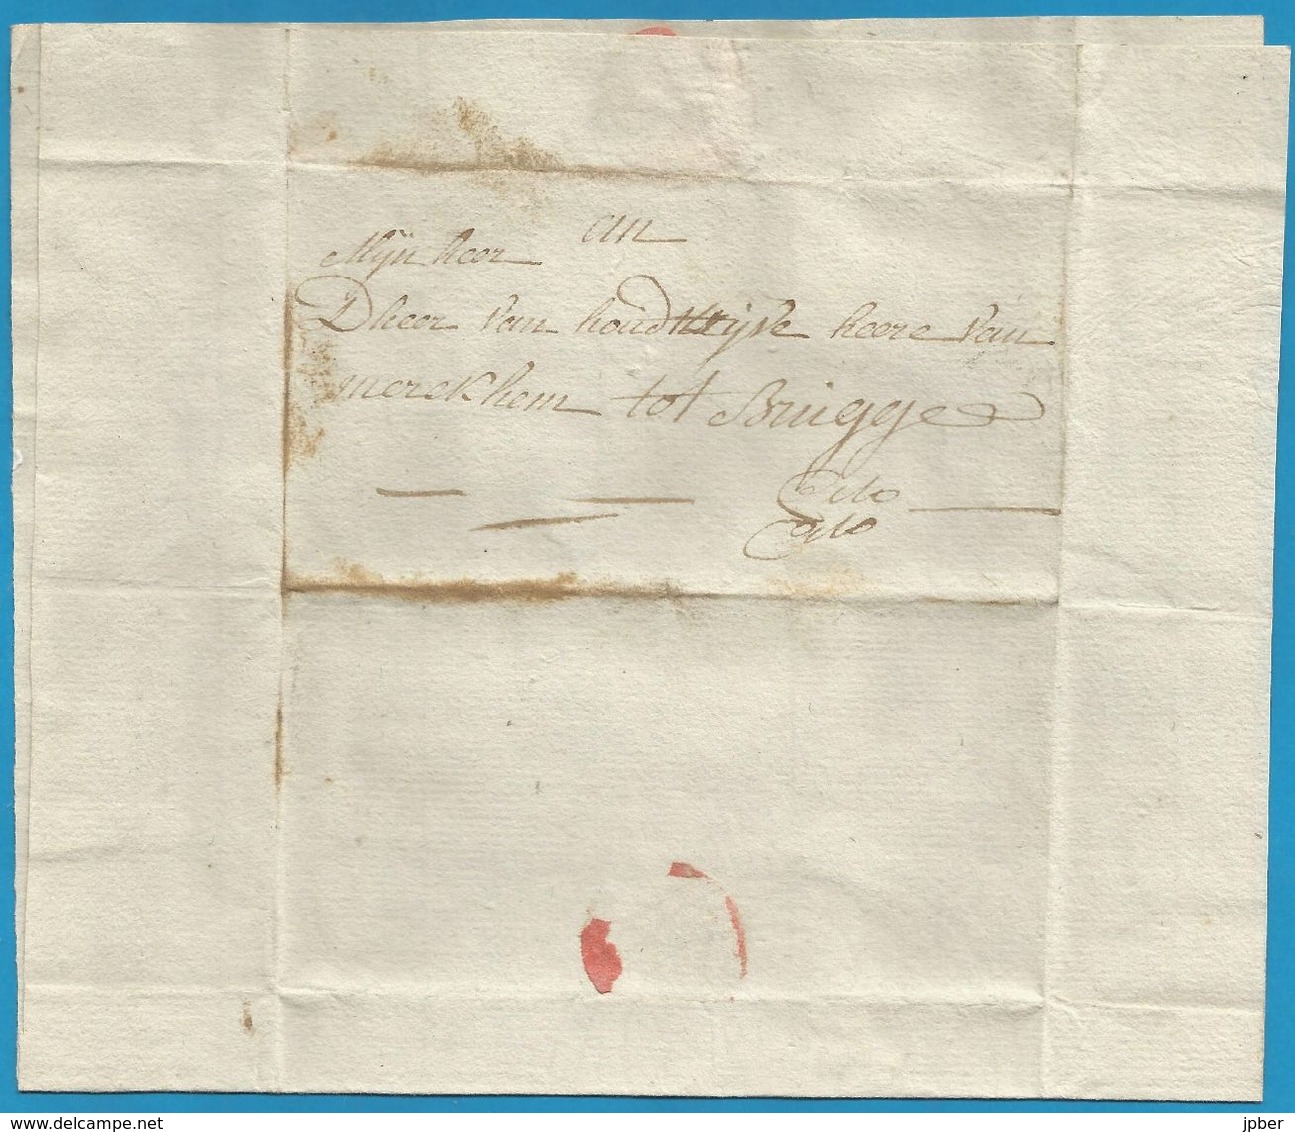 (T-001) Belgique - Précurseur - LAC Du 22/12/1802 De NieuwenDamme à Brugge - Contenu "...de Heer Beghin ... Dixmuide..." - 1794-1814 (French Period)